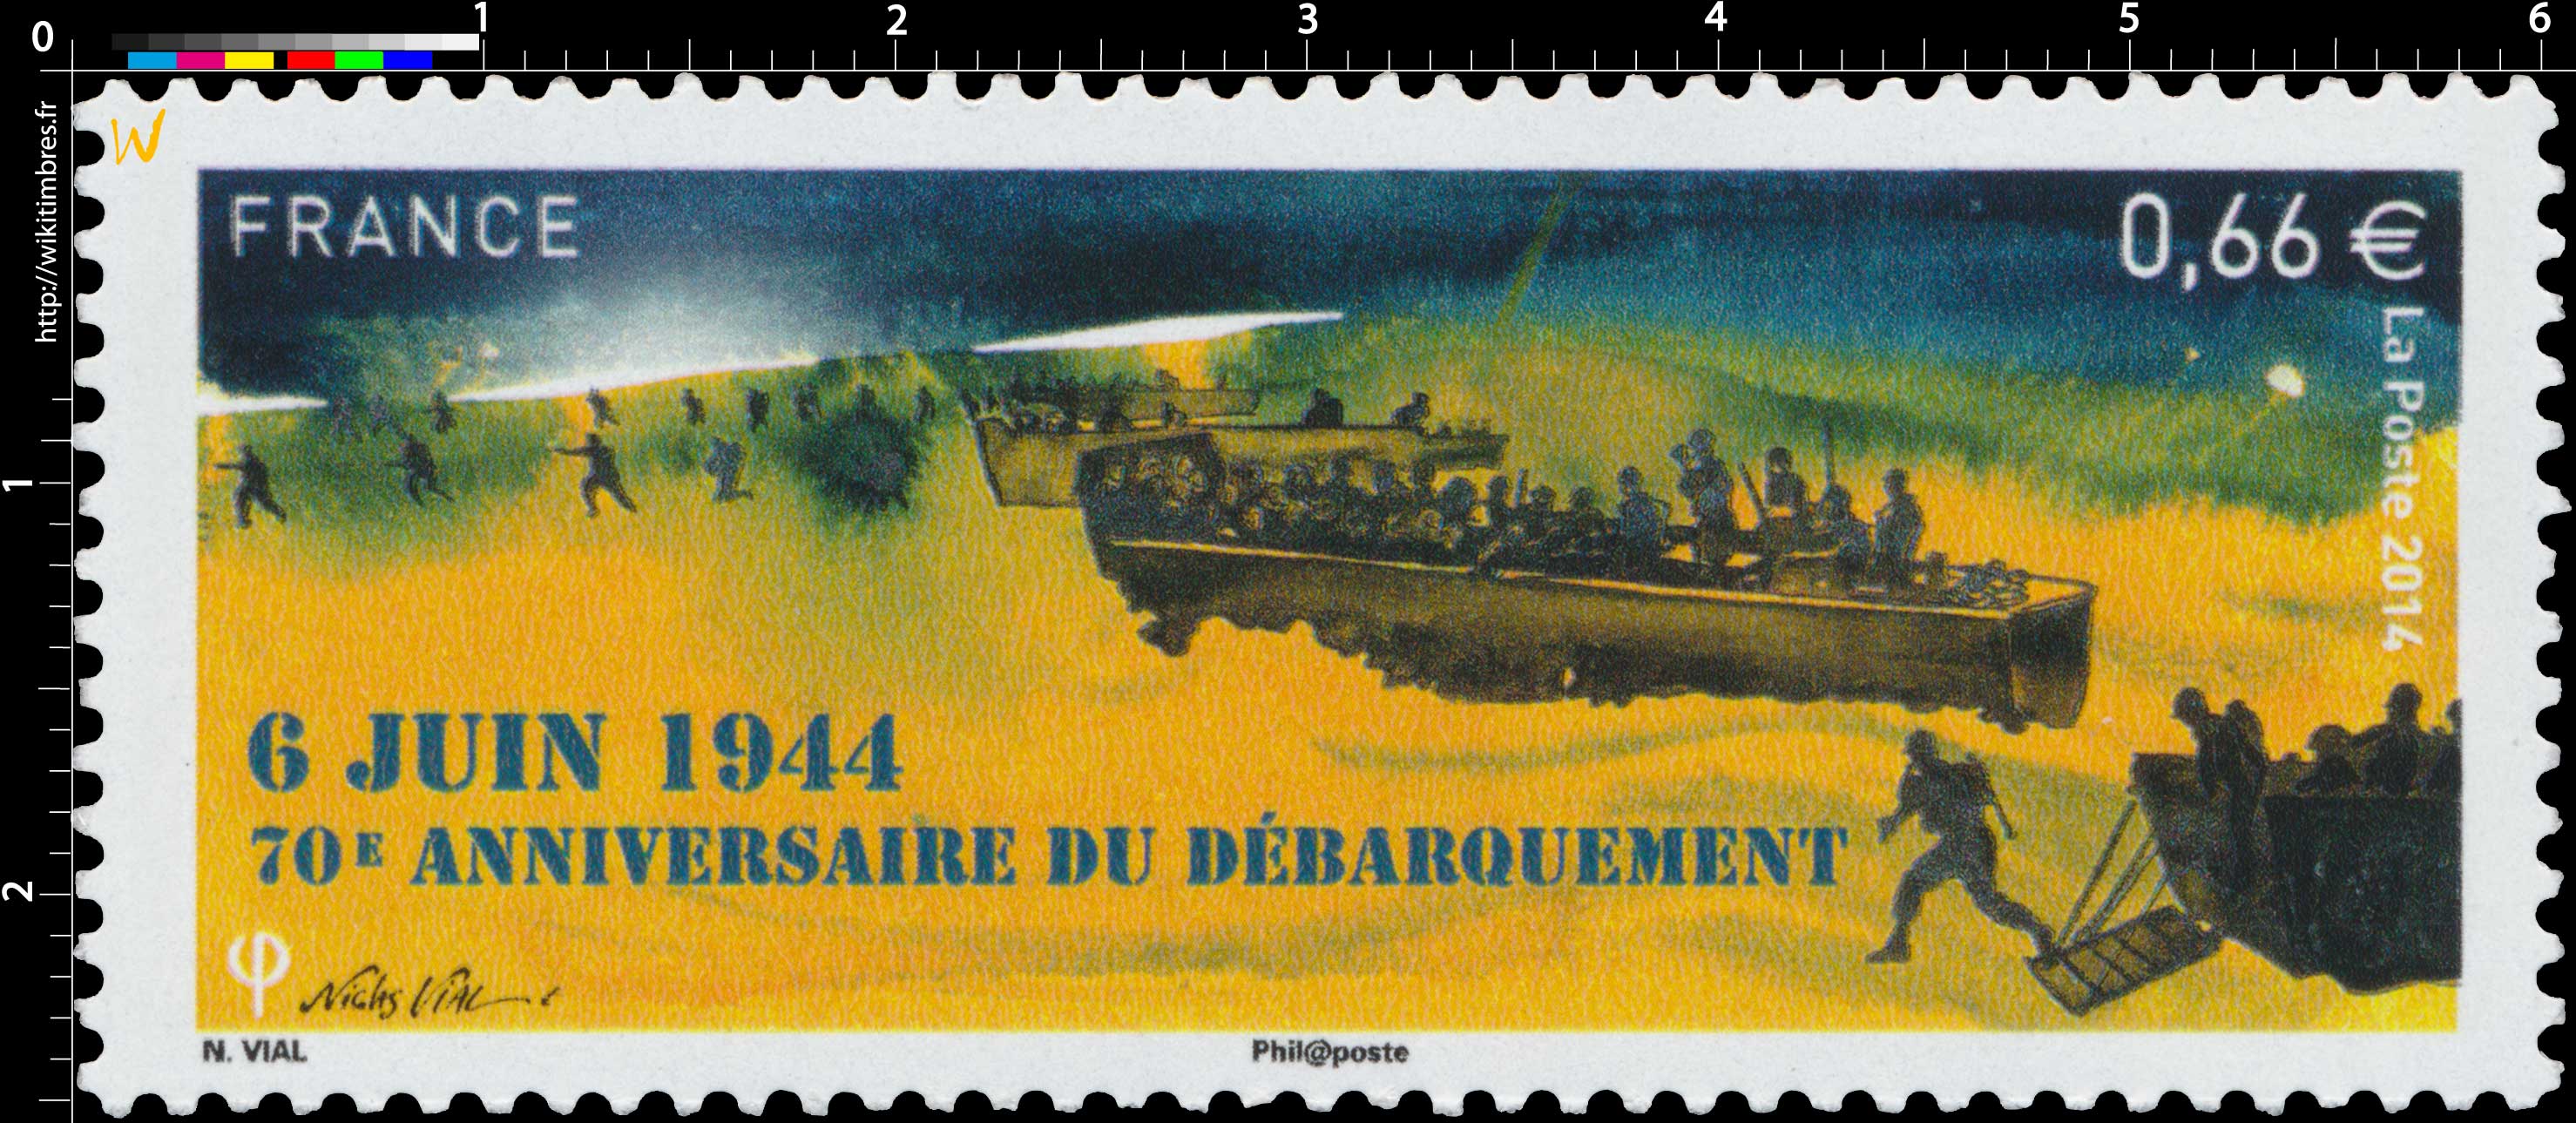 2014 70e anniversaire du débarquement - 6 Juin 1944 